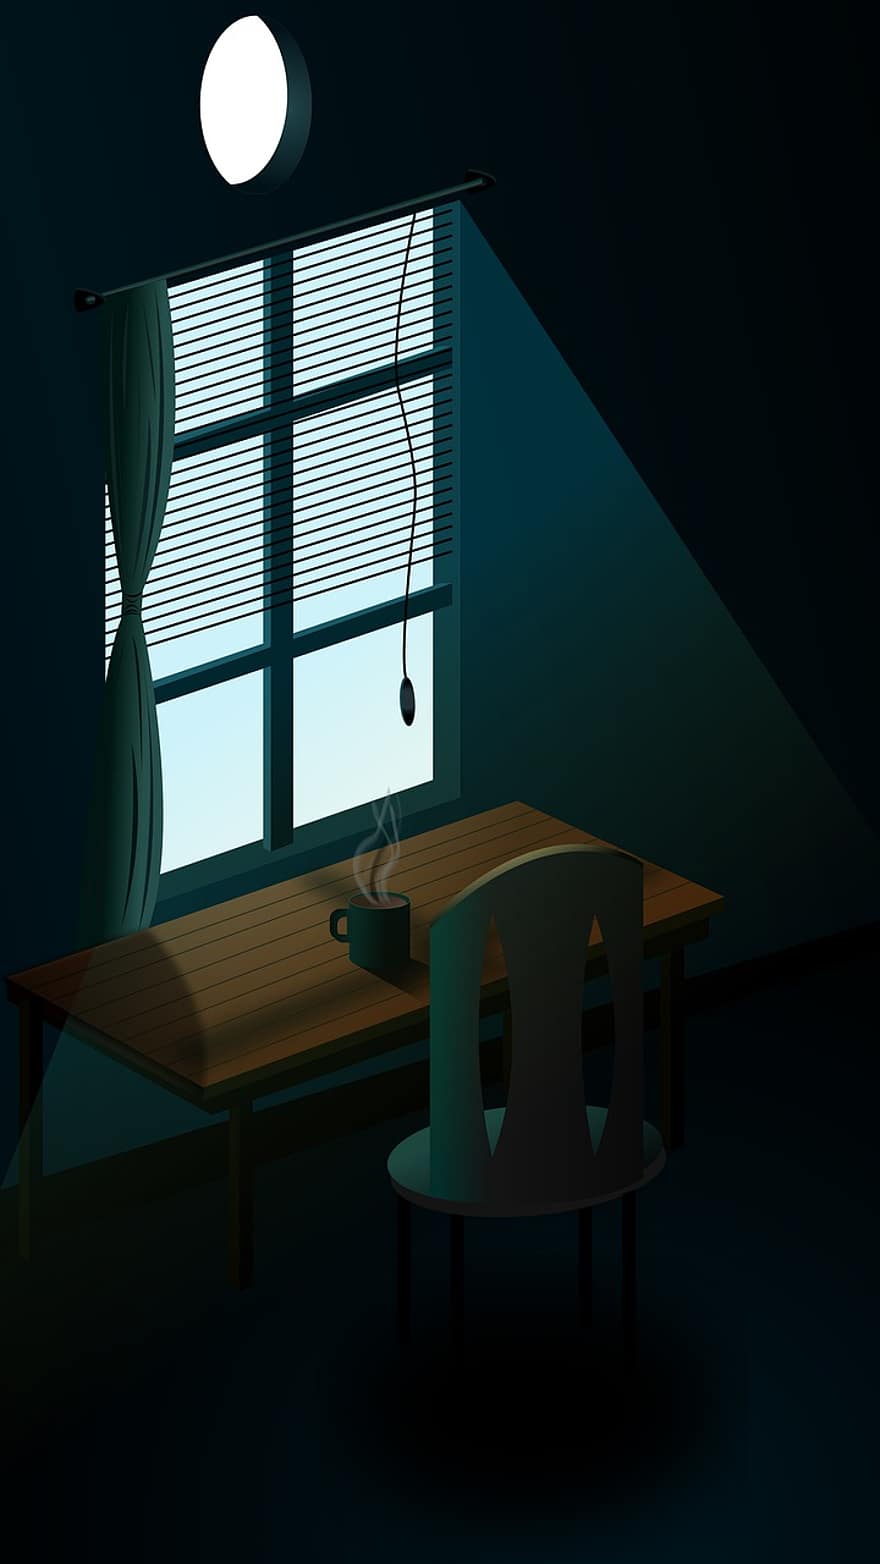 temná místnost, židle, stůl, okno, světlo, pokoj, místnost, nábytek, uvnitř